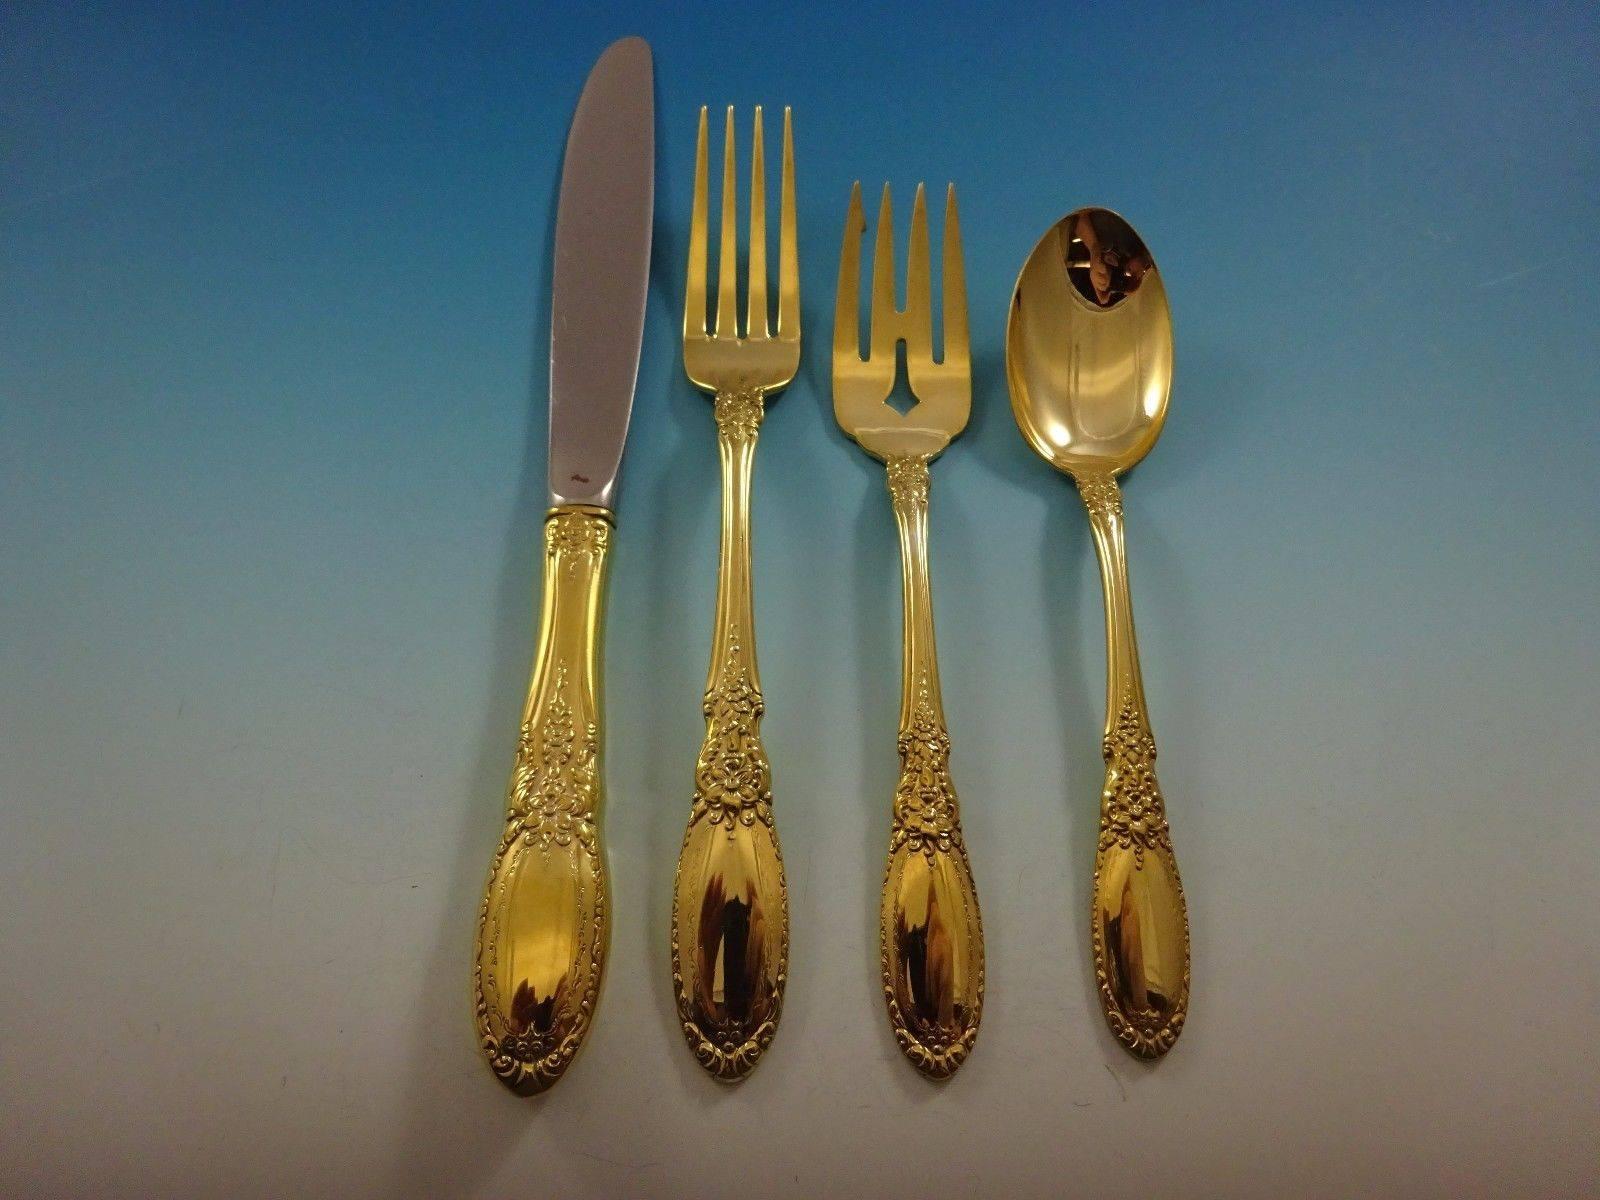 Old Mirror Gold by Towle Sterling Silberbesteck - 24 Teile. Dieses Set ist vergoldet (komplett goldgewaschen) und enthält: 

6 Messer, 8 5/8